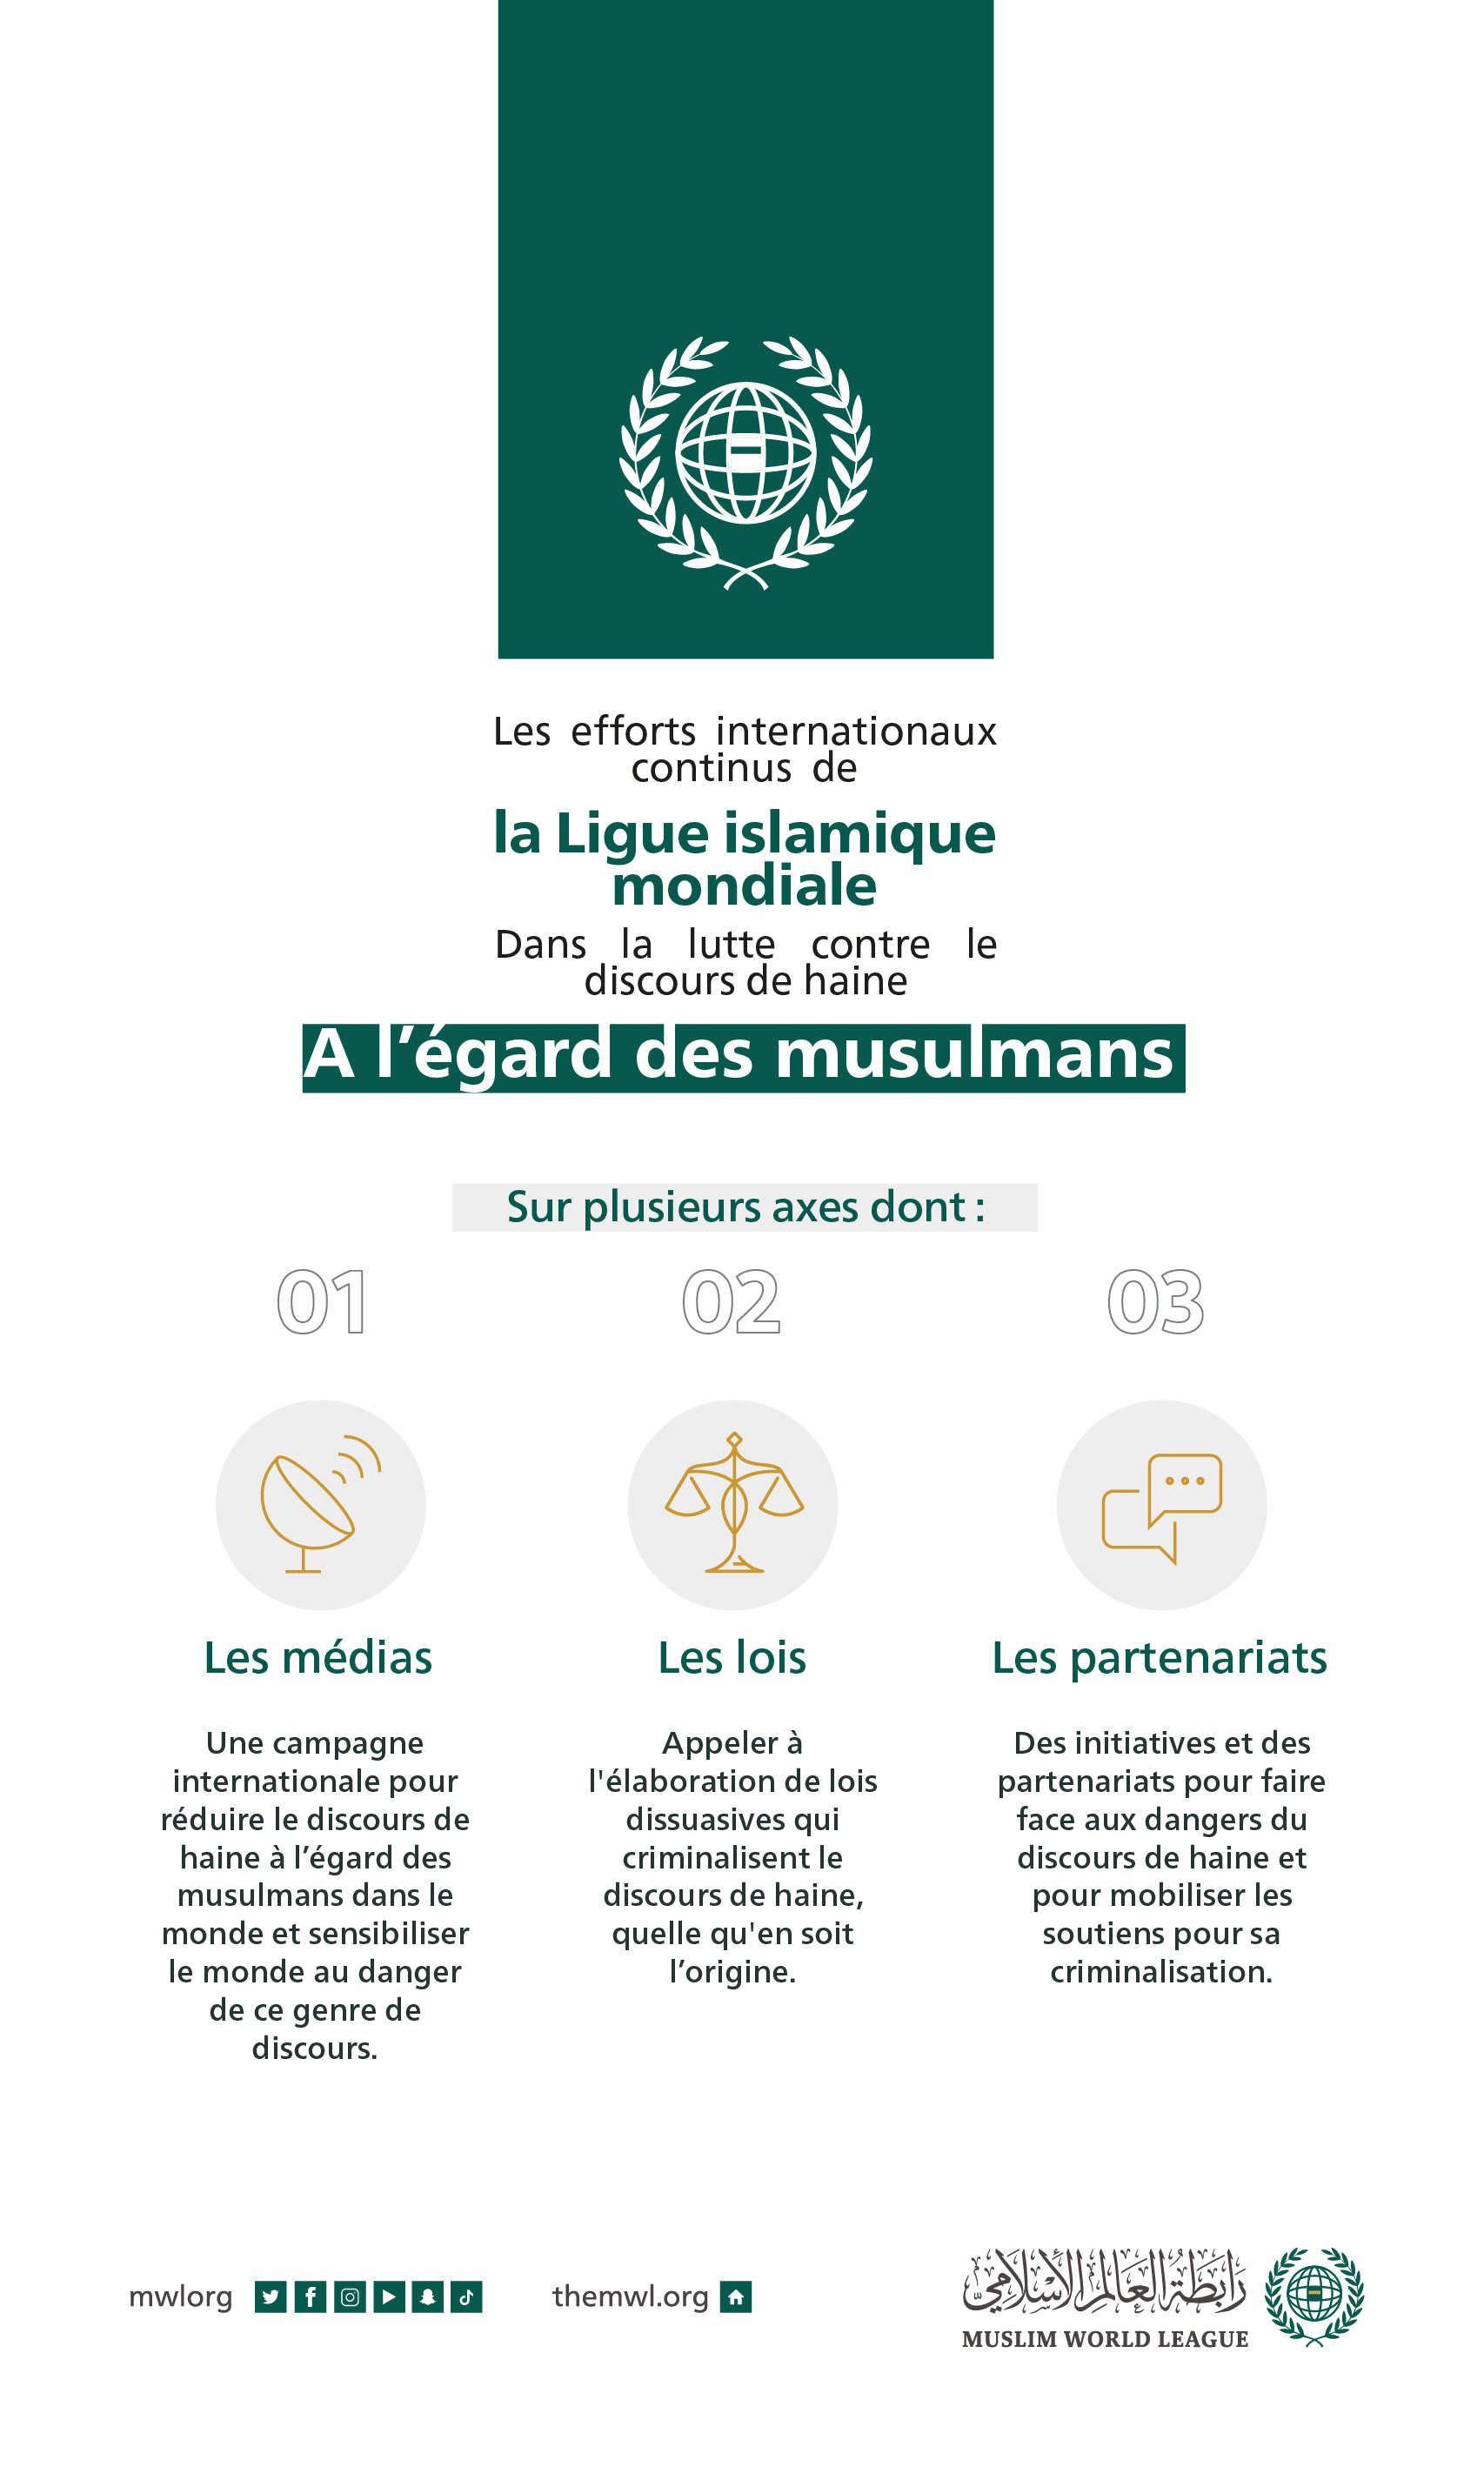 La Ligue islamique mondiale : des initiatives continues à travers le monde pour lutter contre la haine à l’égard des musulmans.